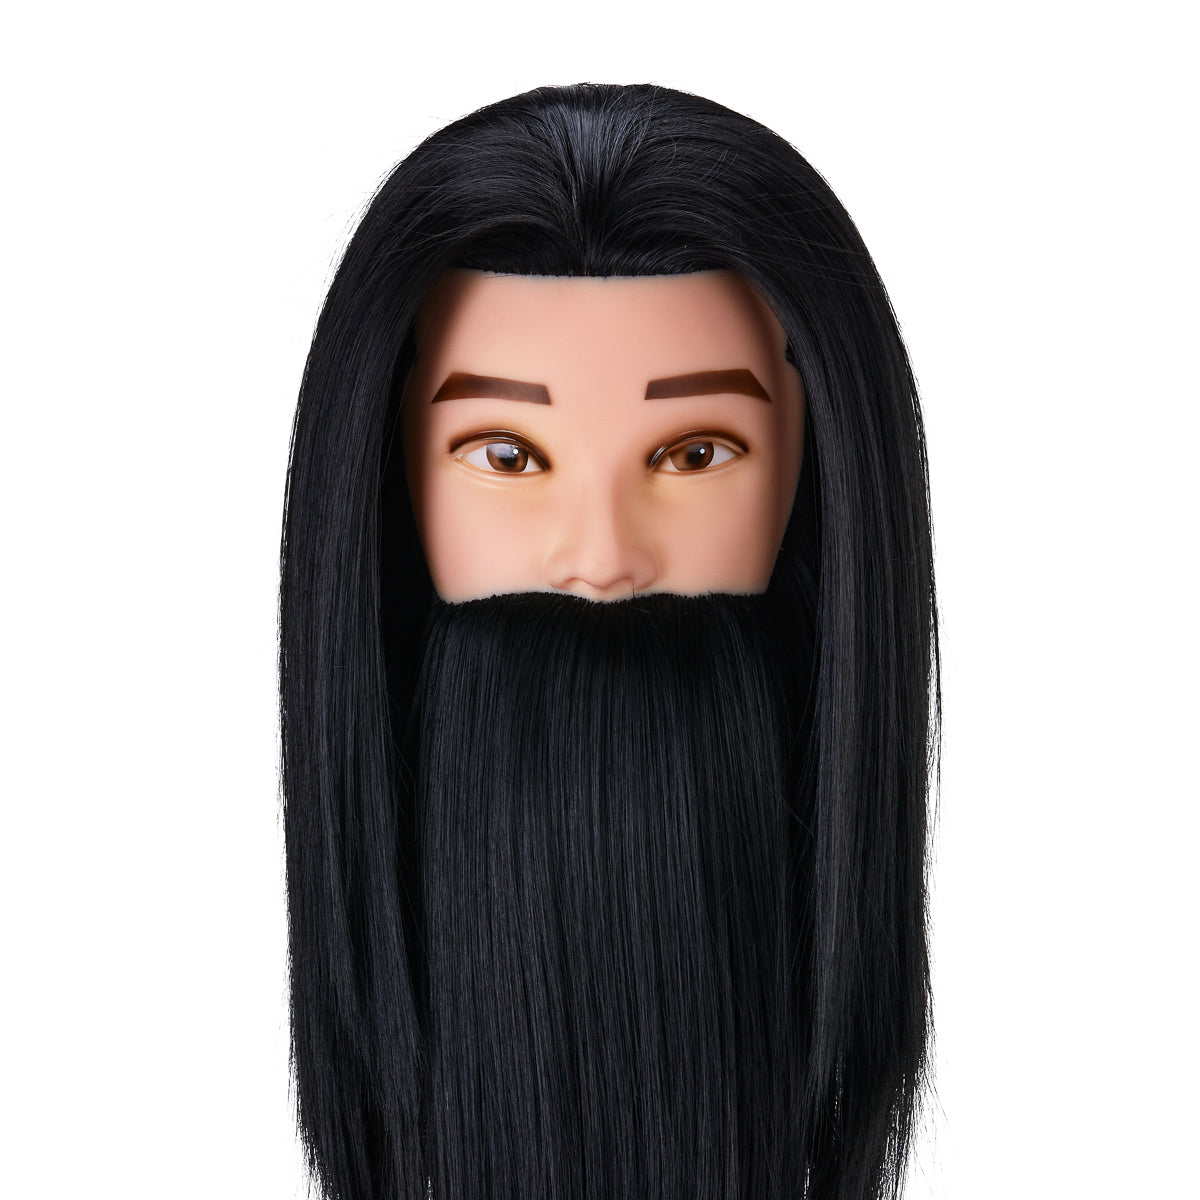 Gabbiano WZ4 Training Head With Beard, Synthetic Hair, Colour 1#, Length 8"+6"